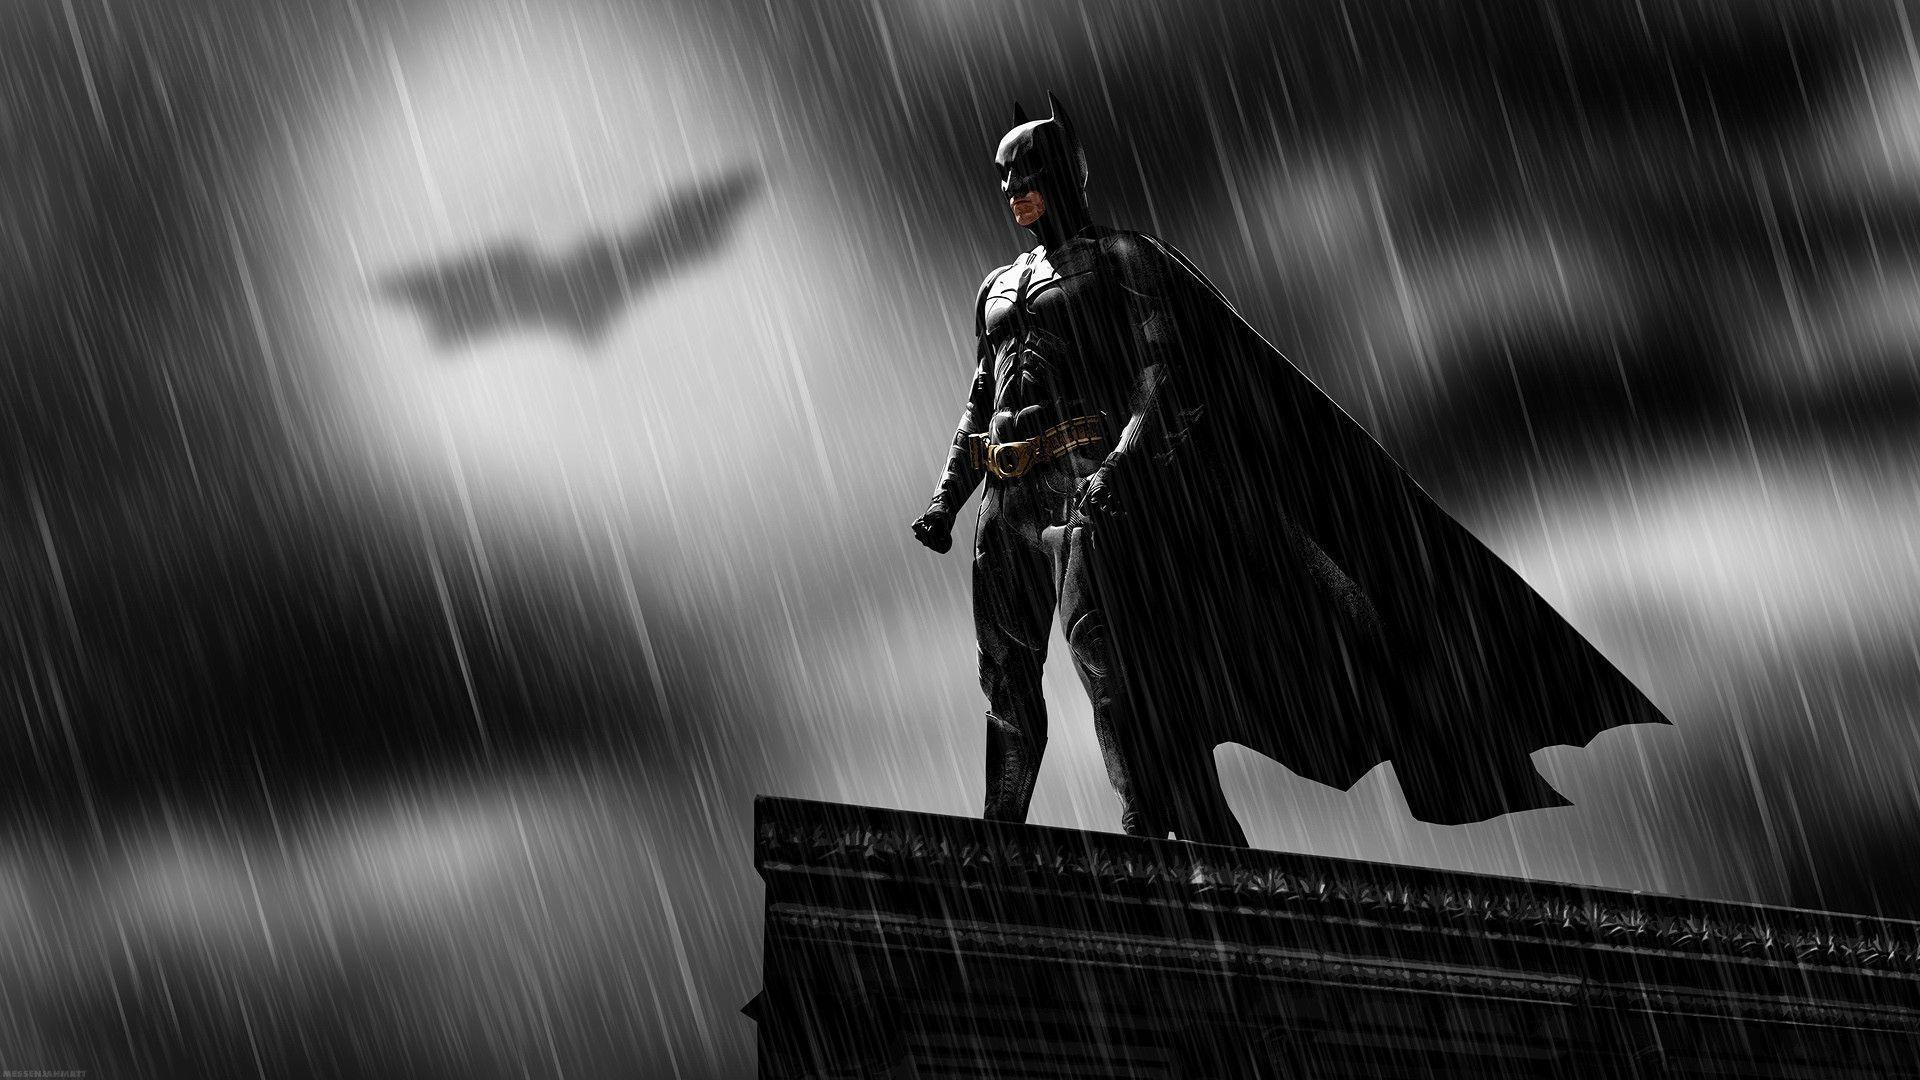 Cool Batman 4 258113 Image HD Wallpaper. Wallfoy.com